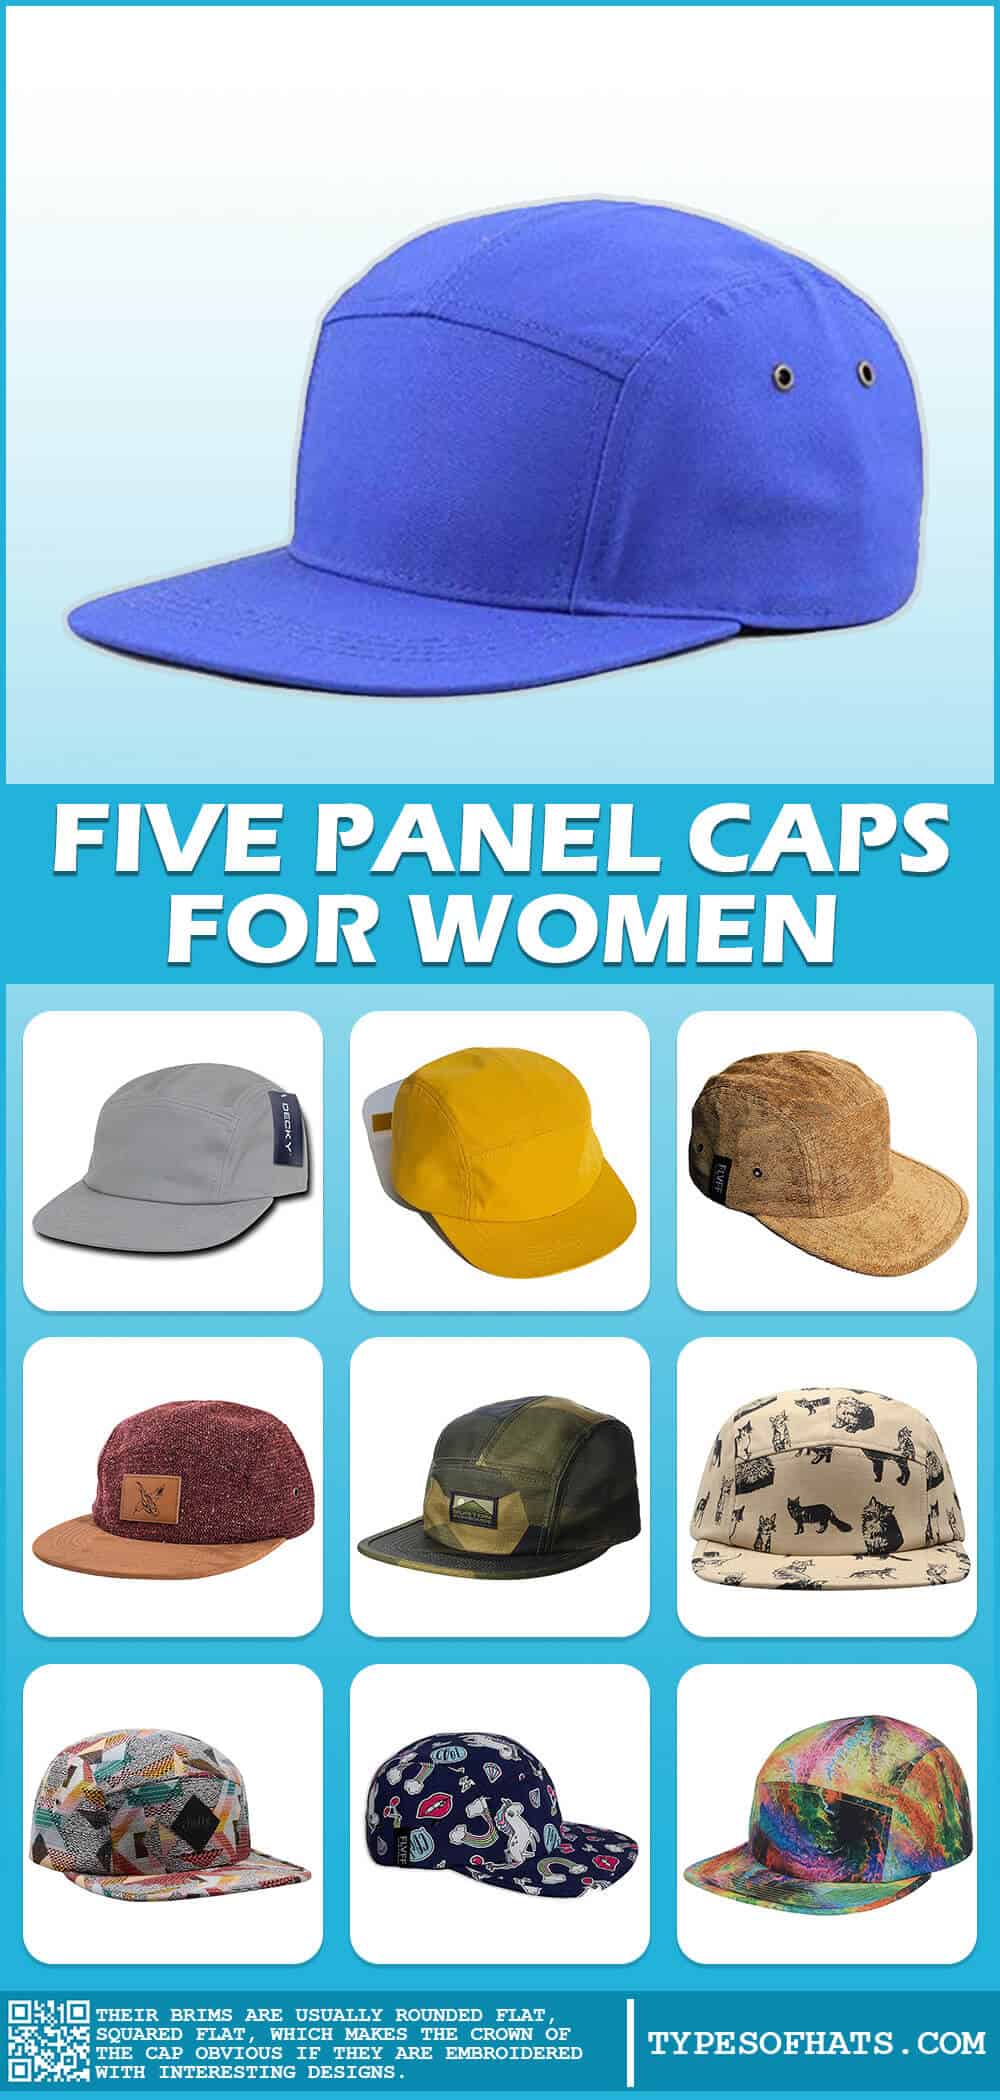 Five Panel Caps for Women